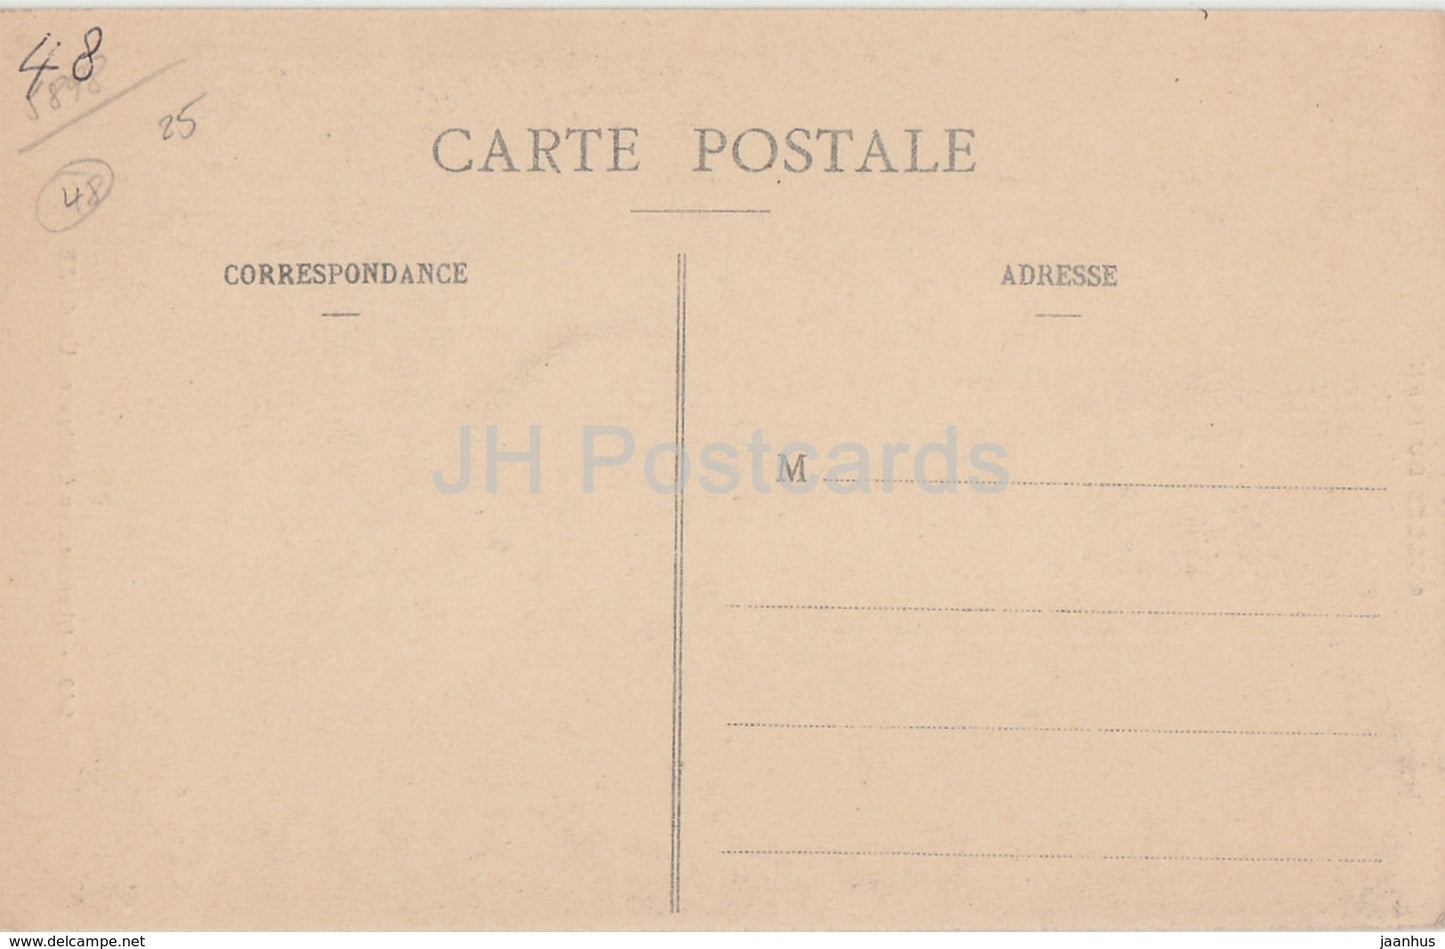 Cheminee du Chateau de La Caze - Gorges du Tarn - 249 - castle - old postcard - France - unused